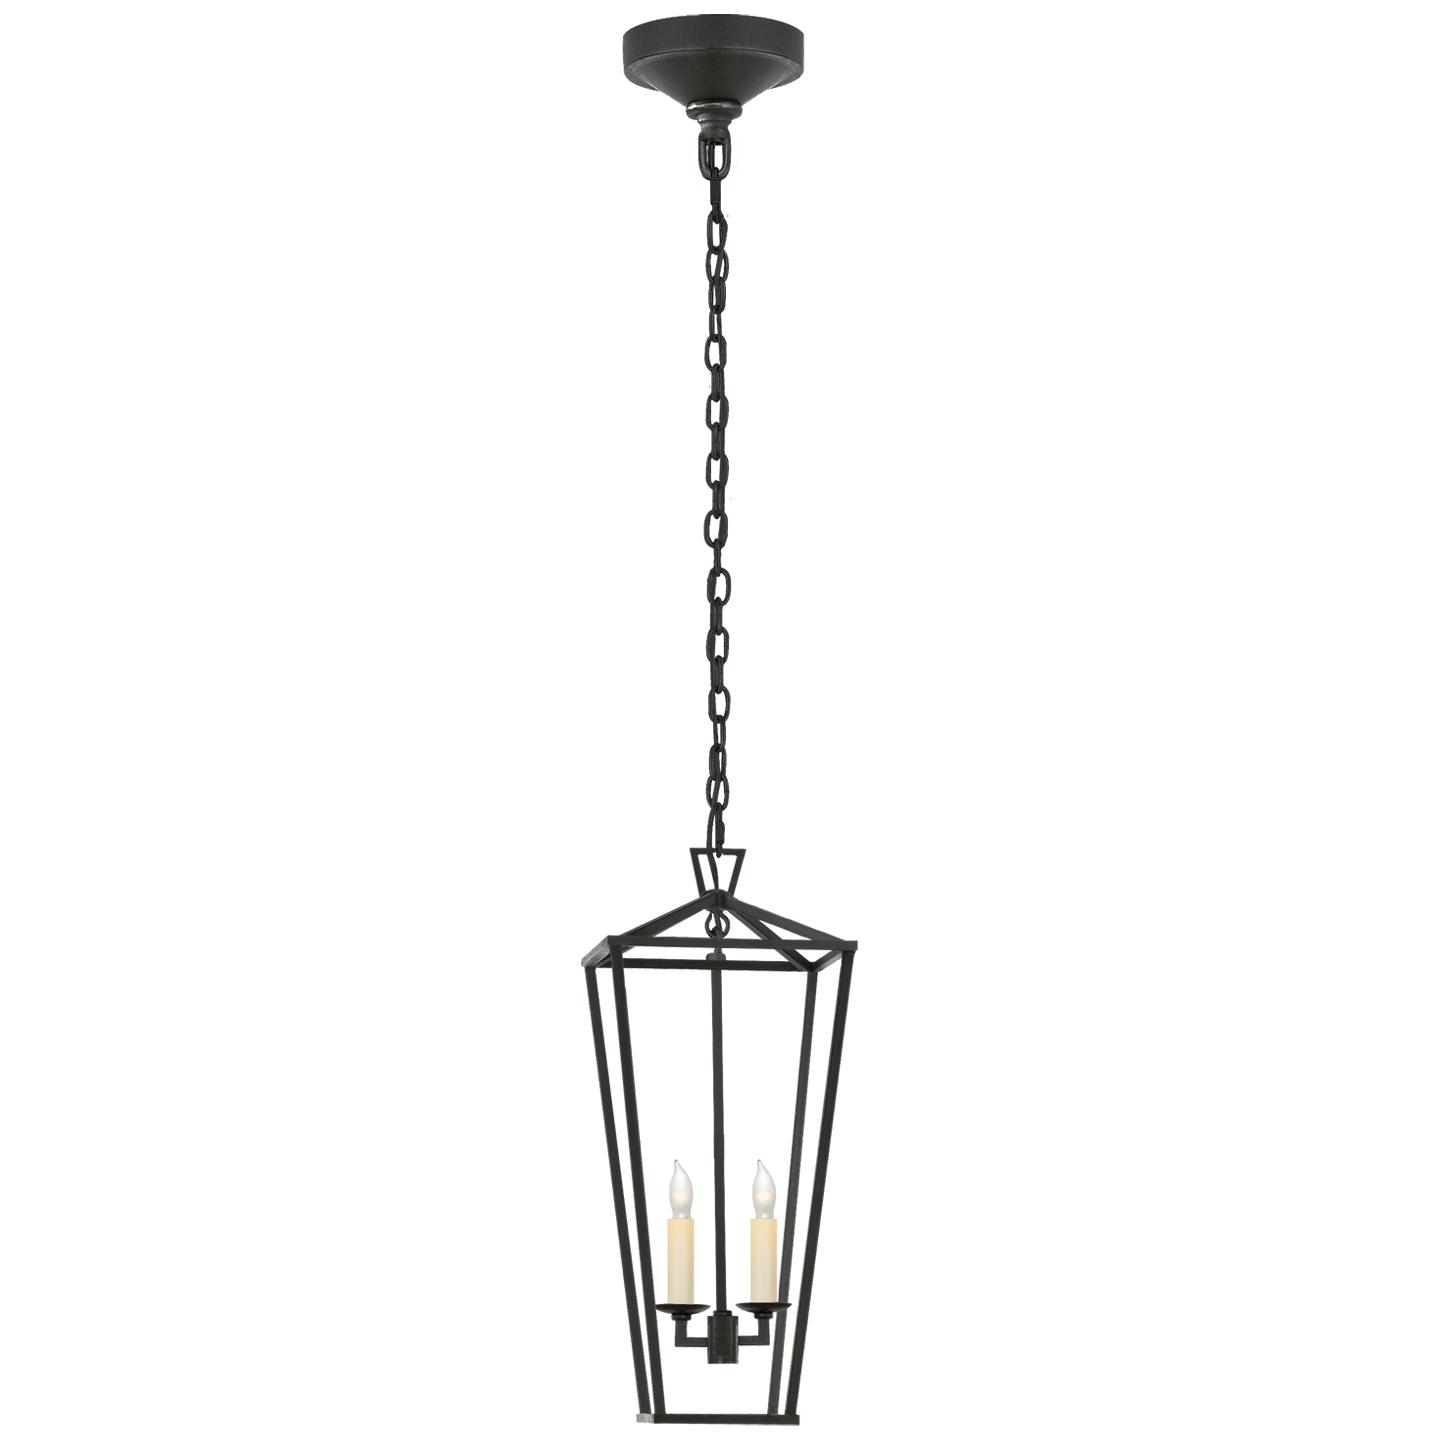 Купить Подвесной светильник Darlana Medium Tall Lantern в интернет-магазине roooms.ru